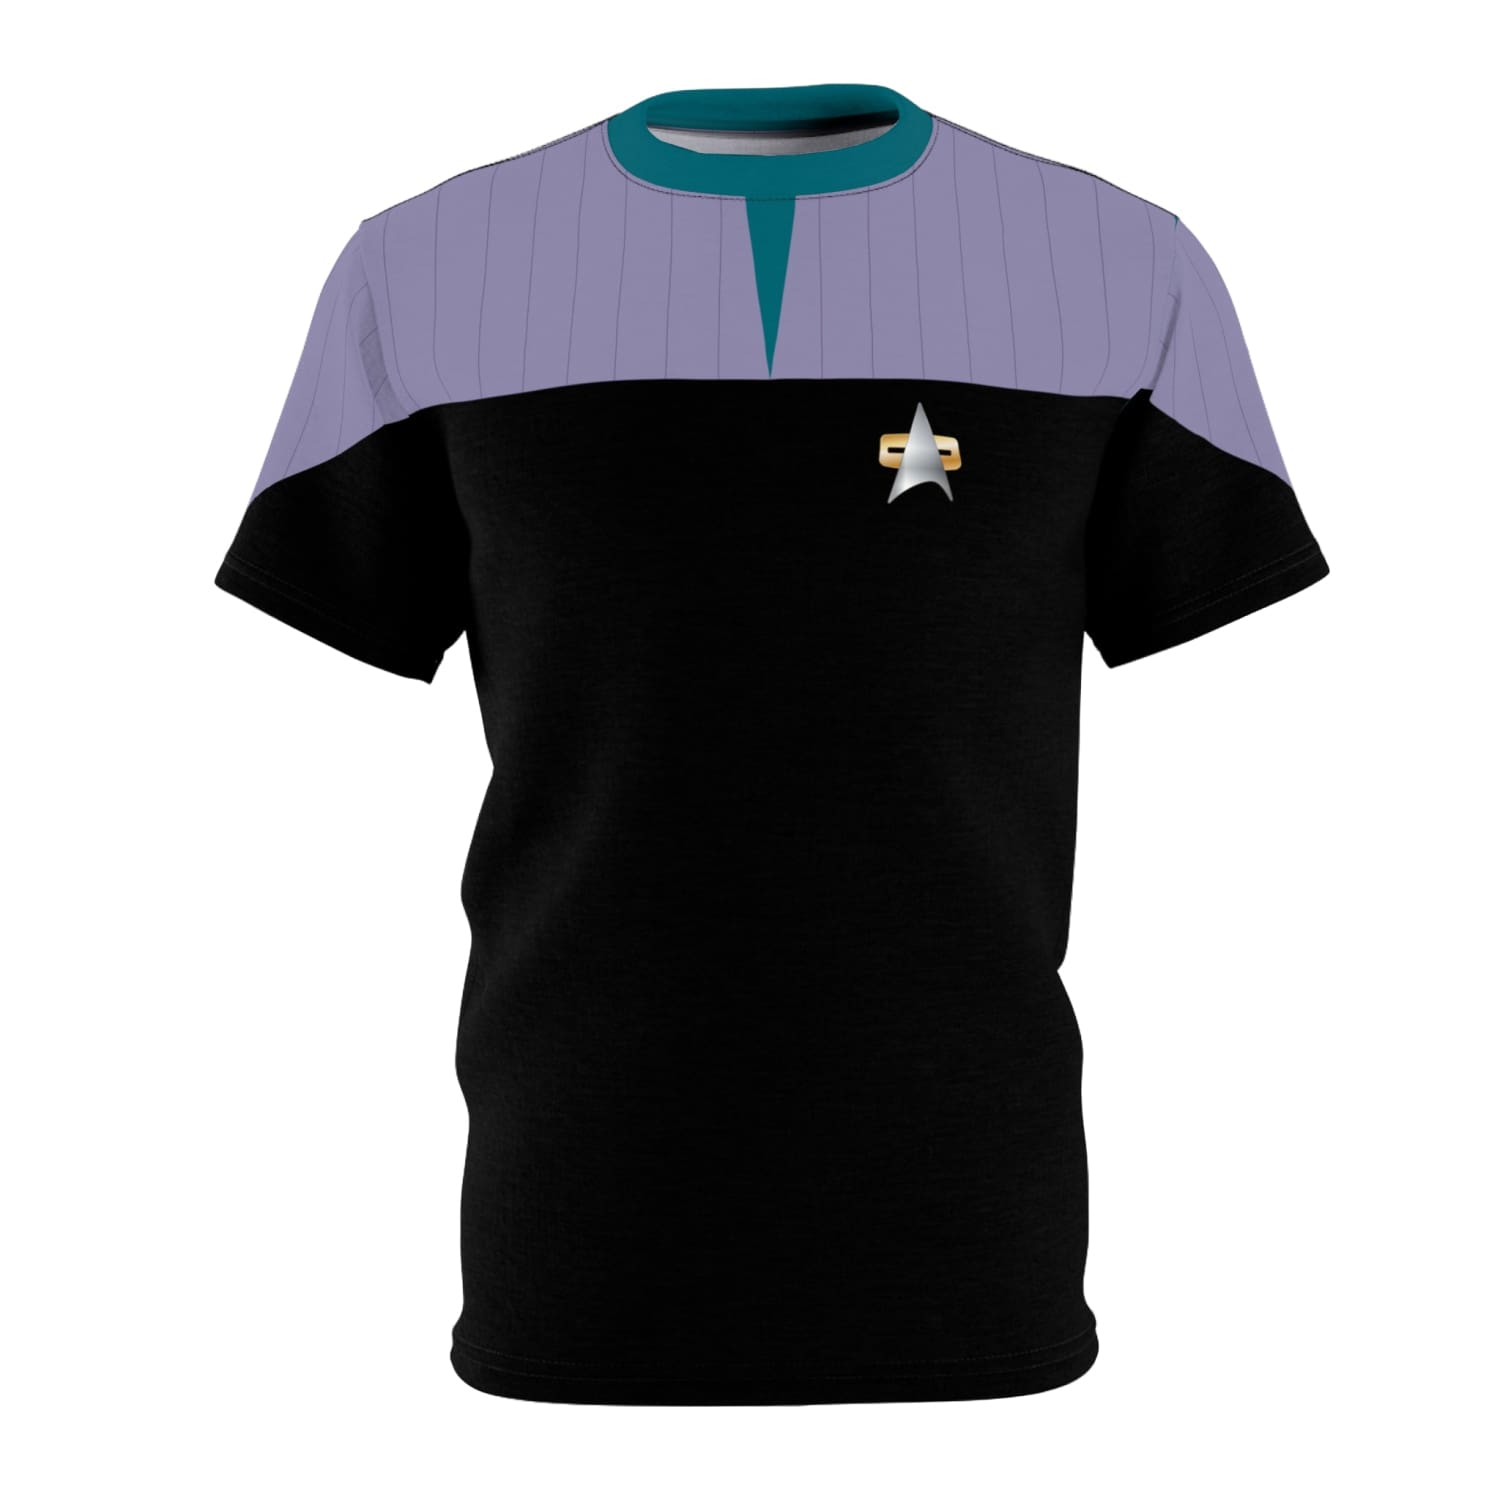 Trek Uniform Tee DS9 - Sciences Blue Unisex AOP Black stitching / 4 oz. S All Over Prints